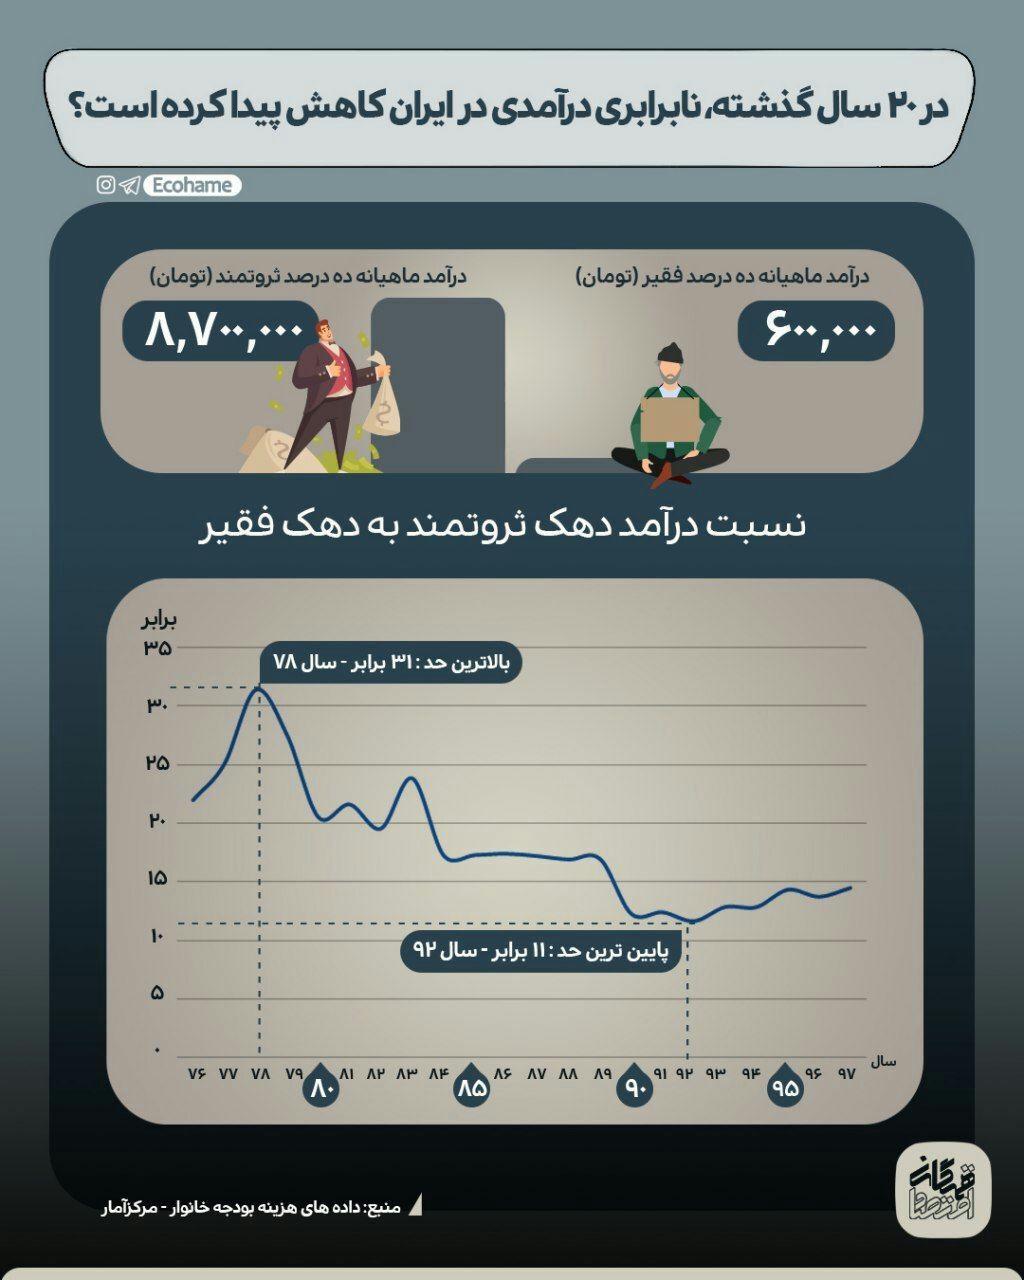 وضعیت نابرابری درآمدی در ایران، طی 20 سال گذشته